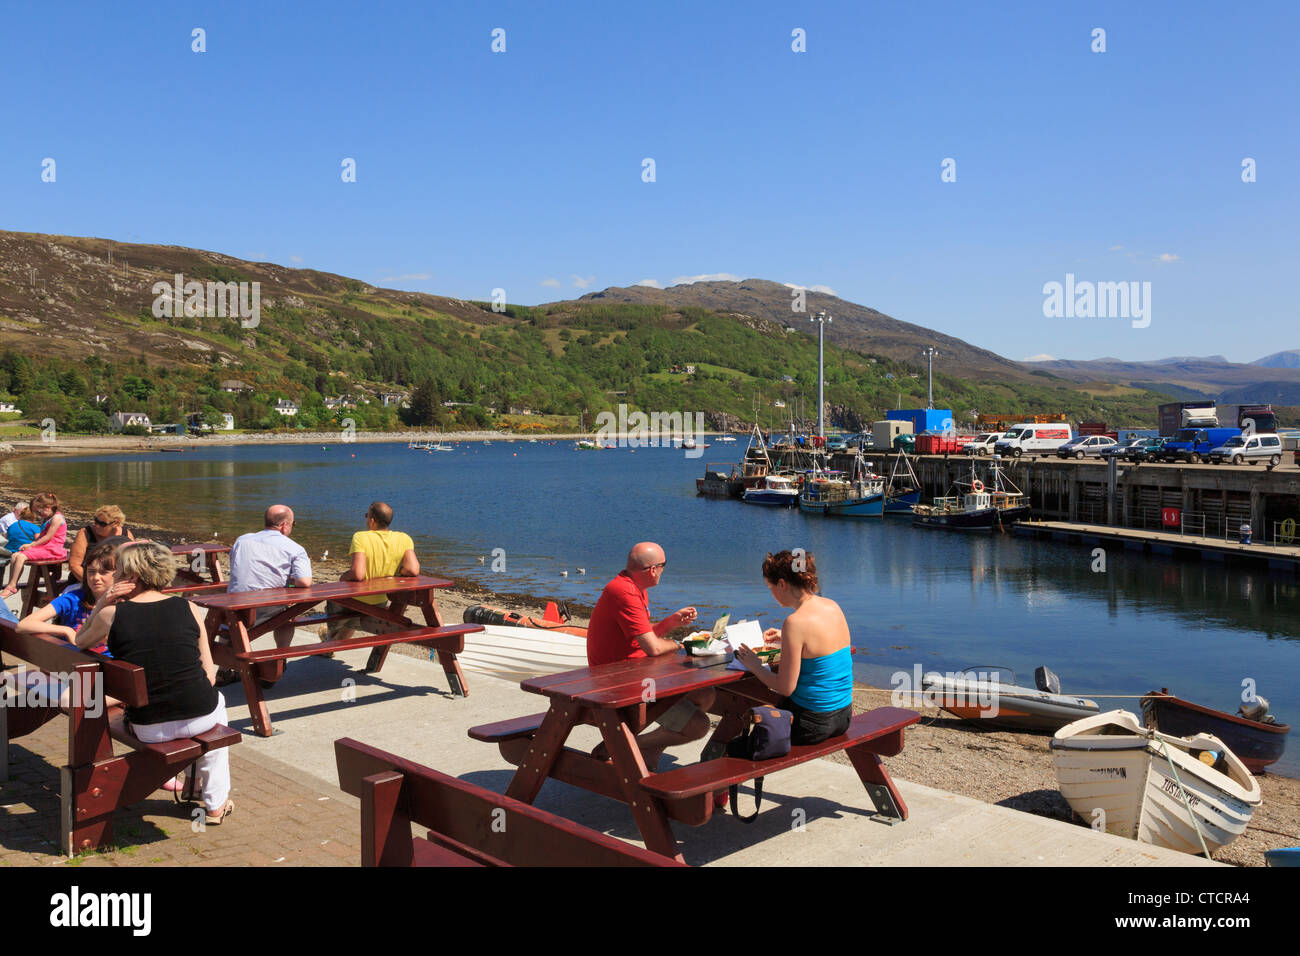 Menschen an Tischen sitzen auf Meer mit Loch Broom Fischerhafen auf Northwest Highlands Küste im Sommer Saison. Ullapool Schottland Großbritannien Stockfoto